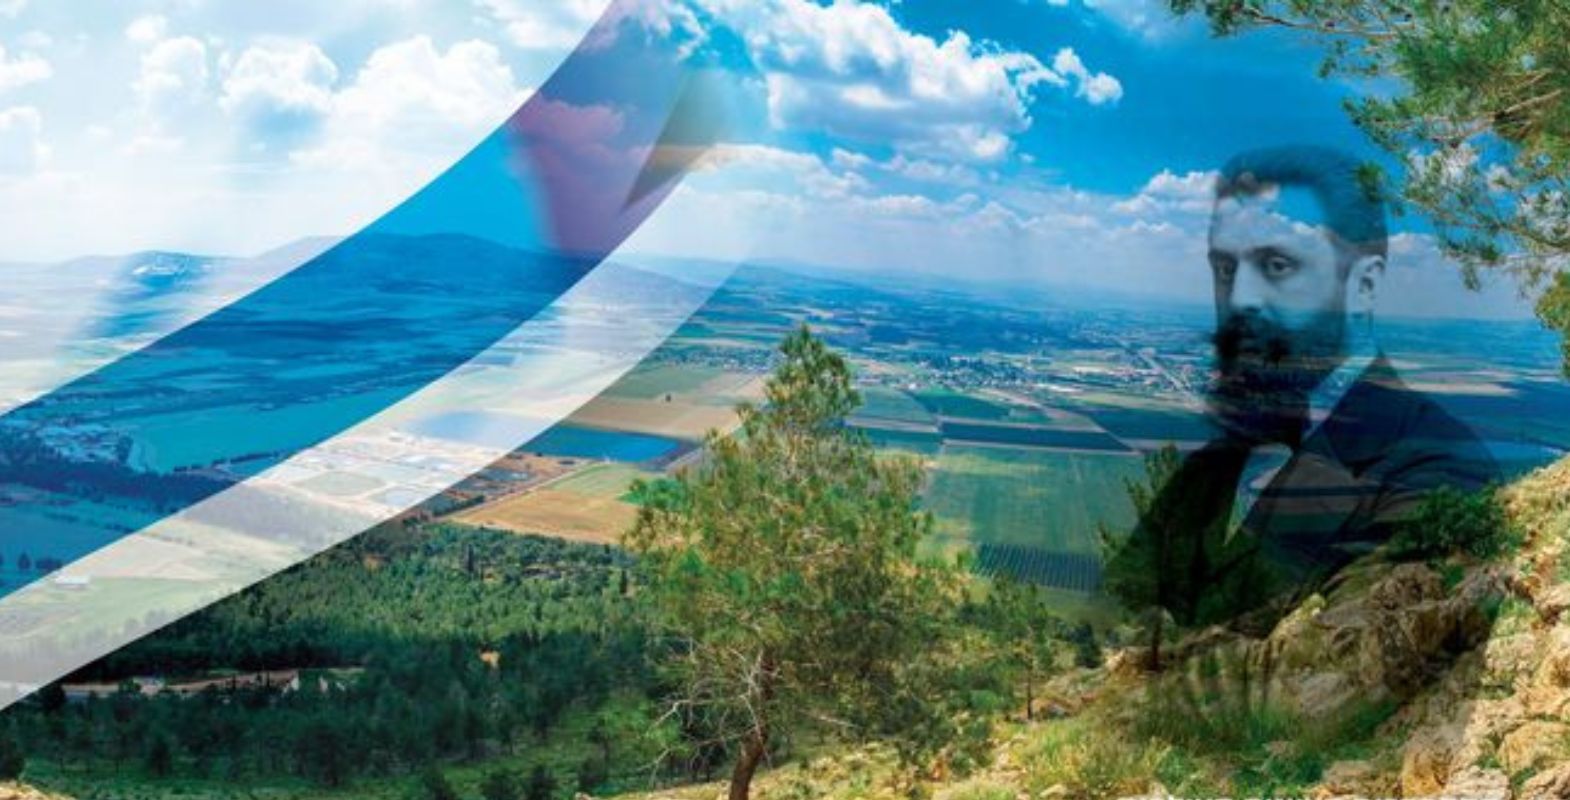 דמותו של הרצל על רקע נוף ארץ ישראלי